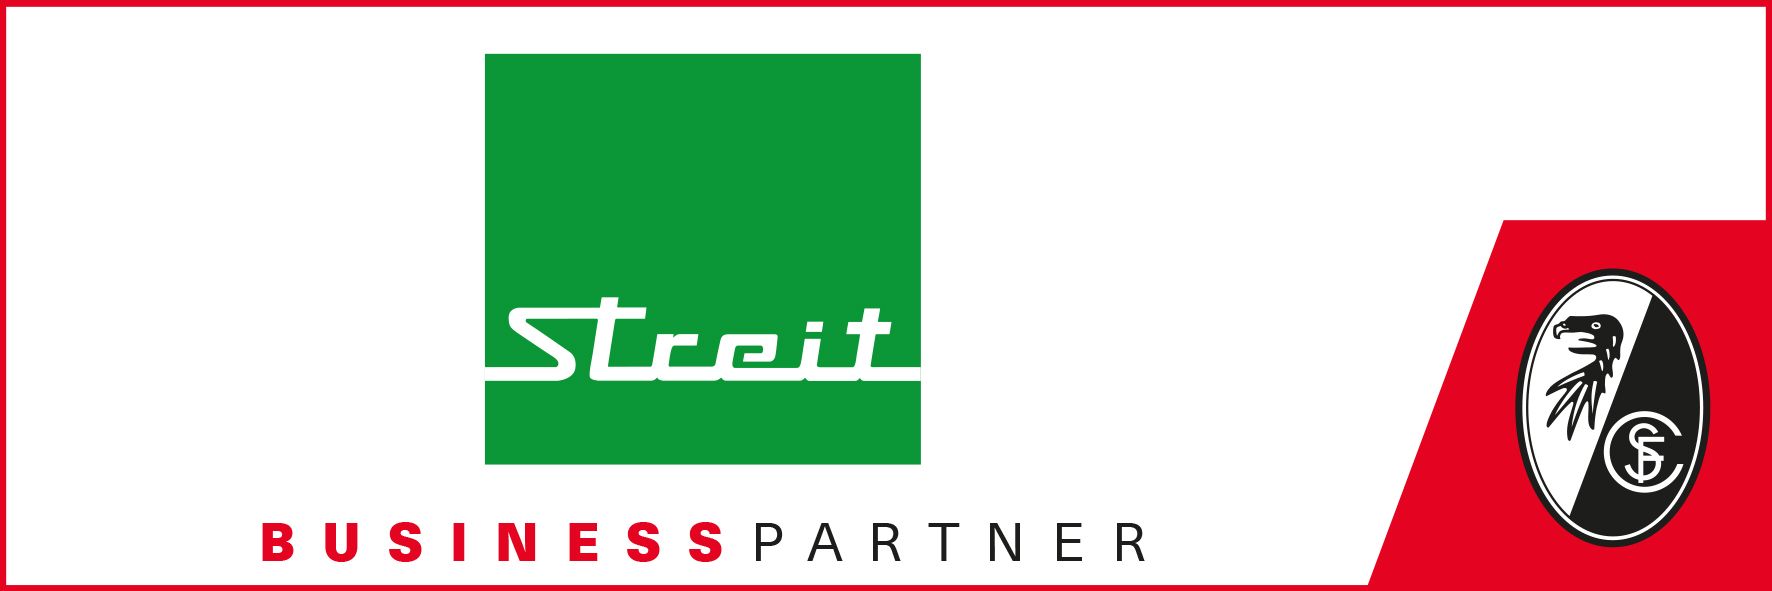 Business Partner STREIT und SC Freiburg